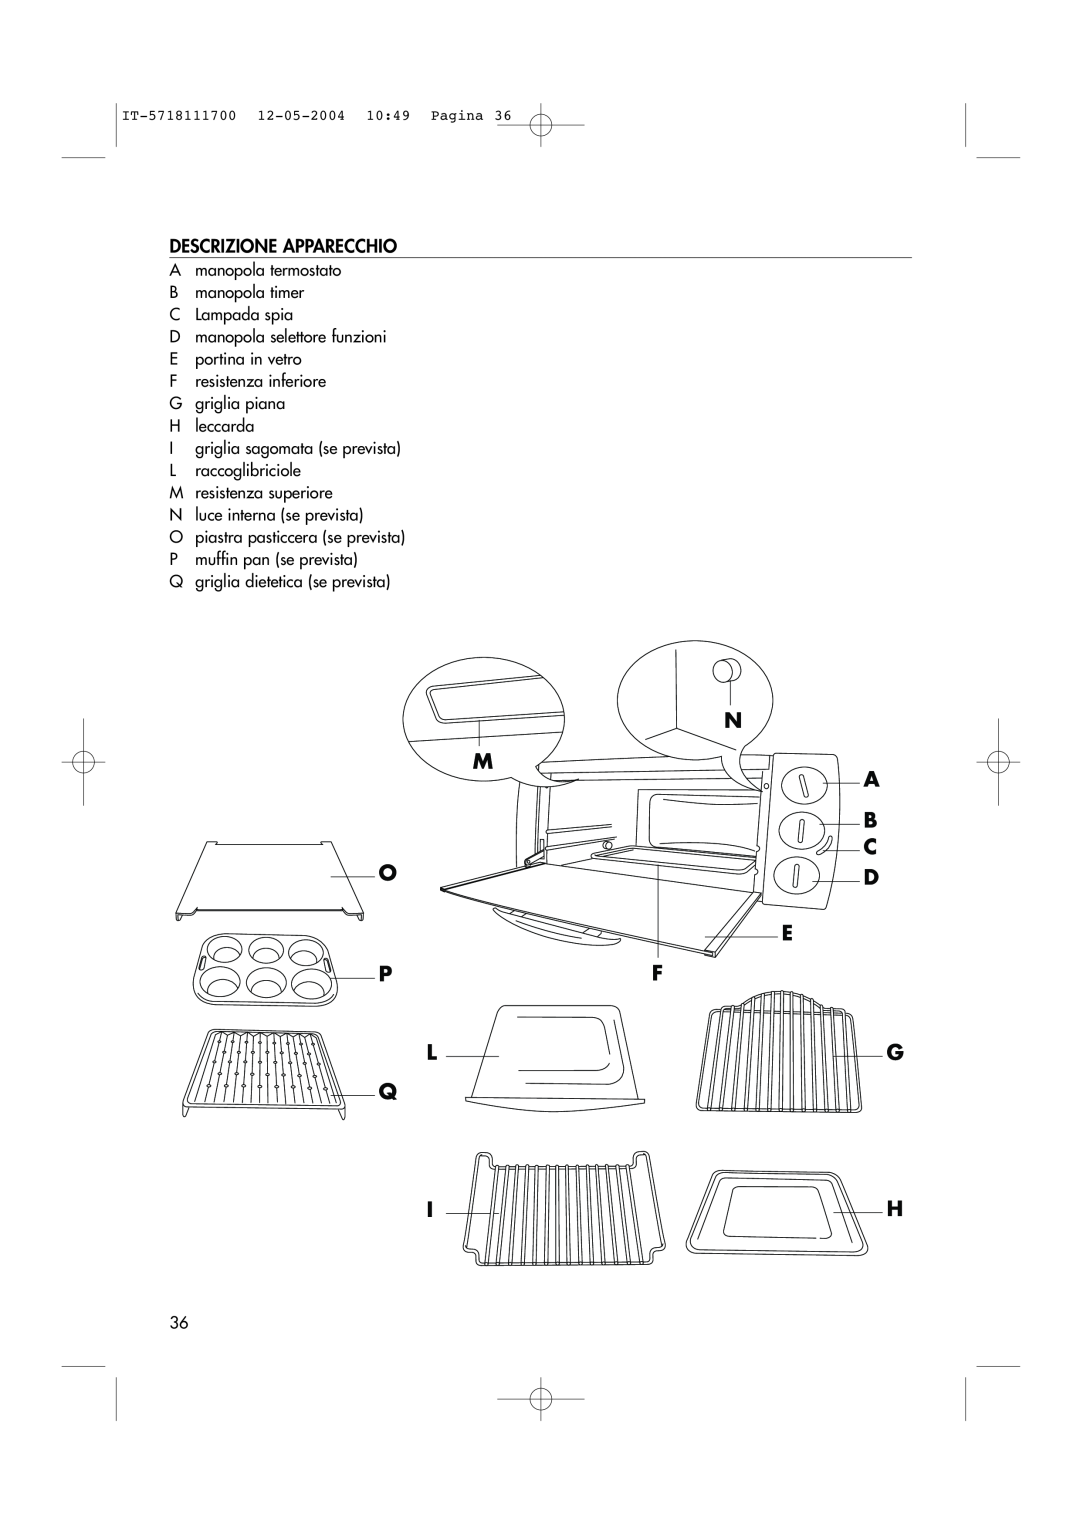 DeLonghi EO1200 Series manual Descrizione Apparecchio, N M A B C, E Pf Lg Q Ih 